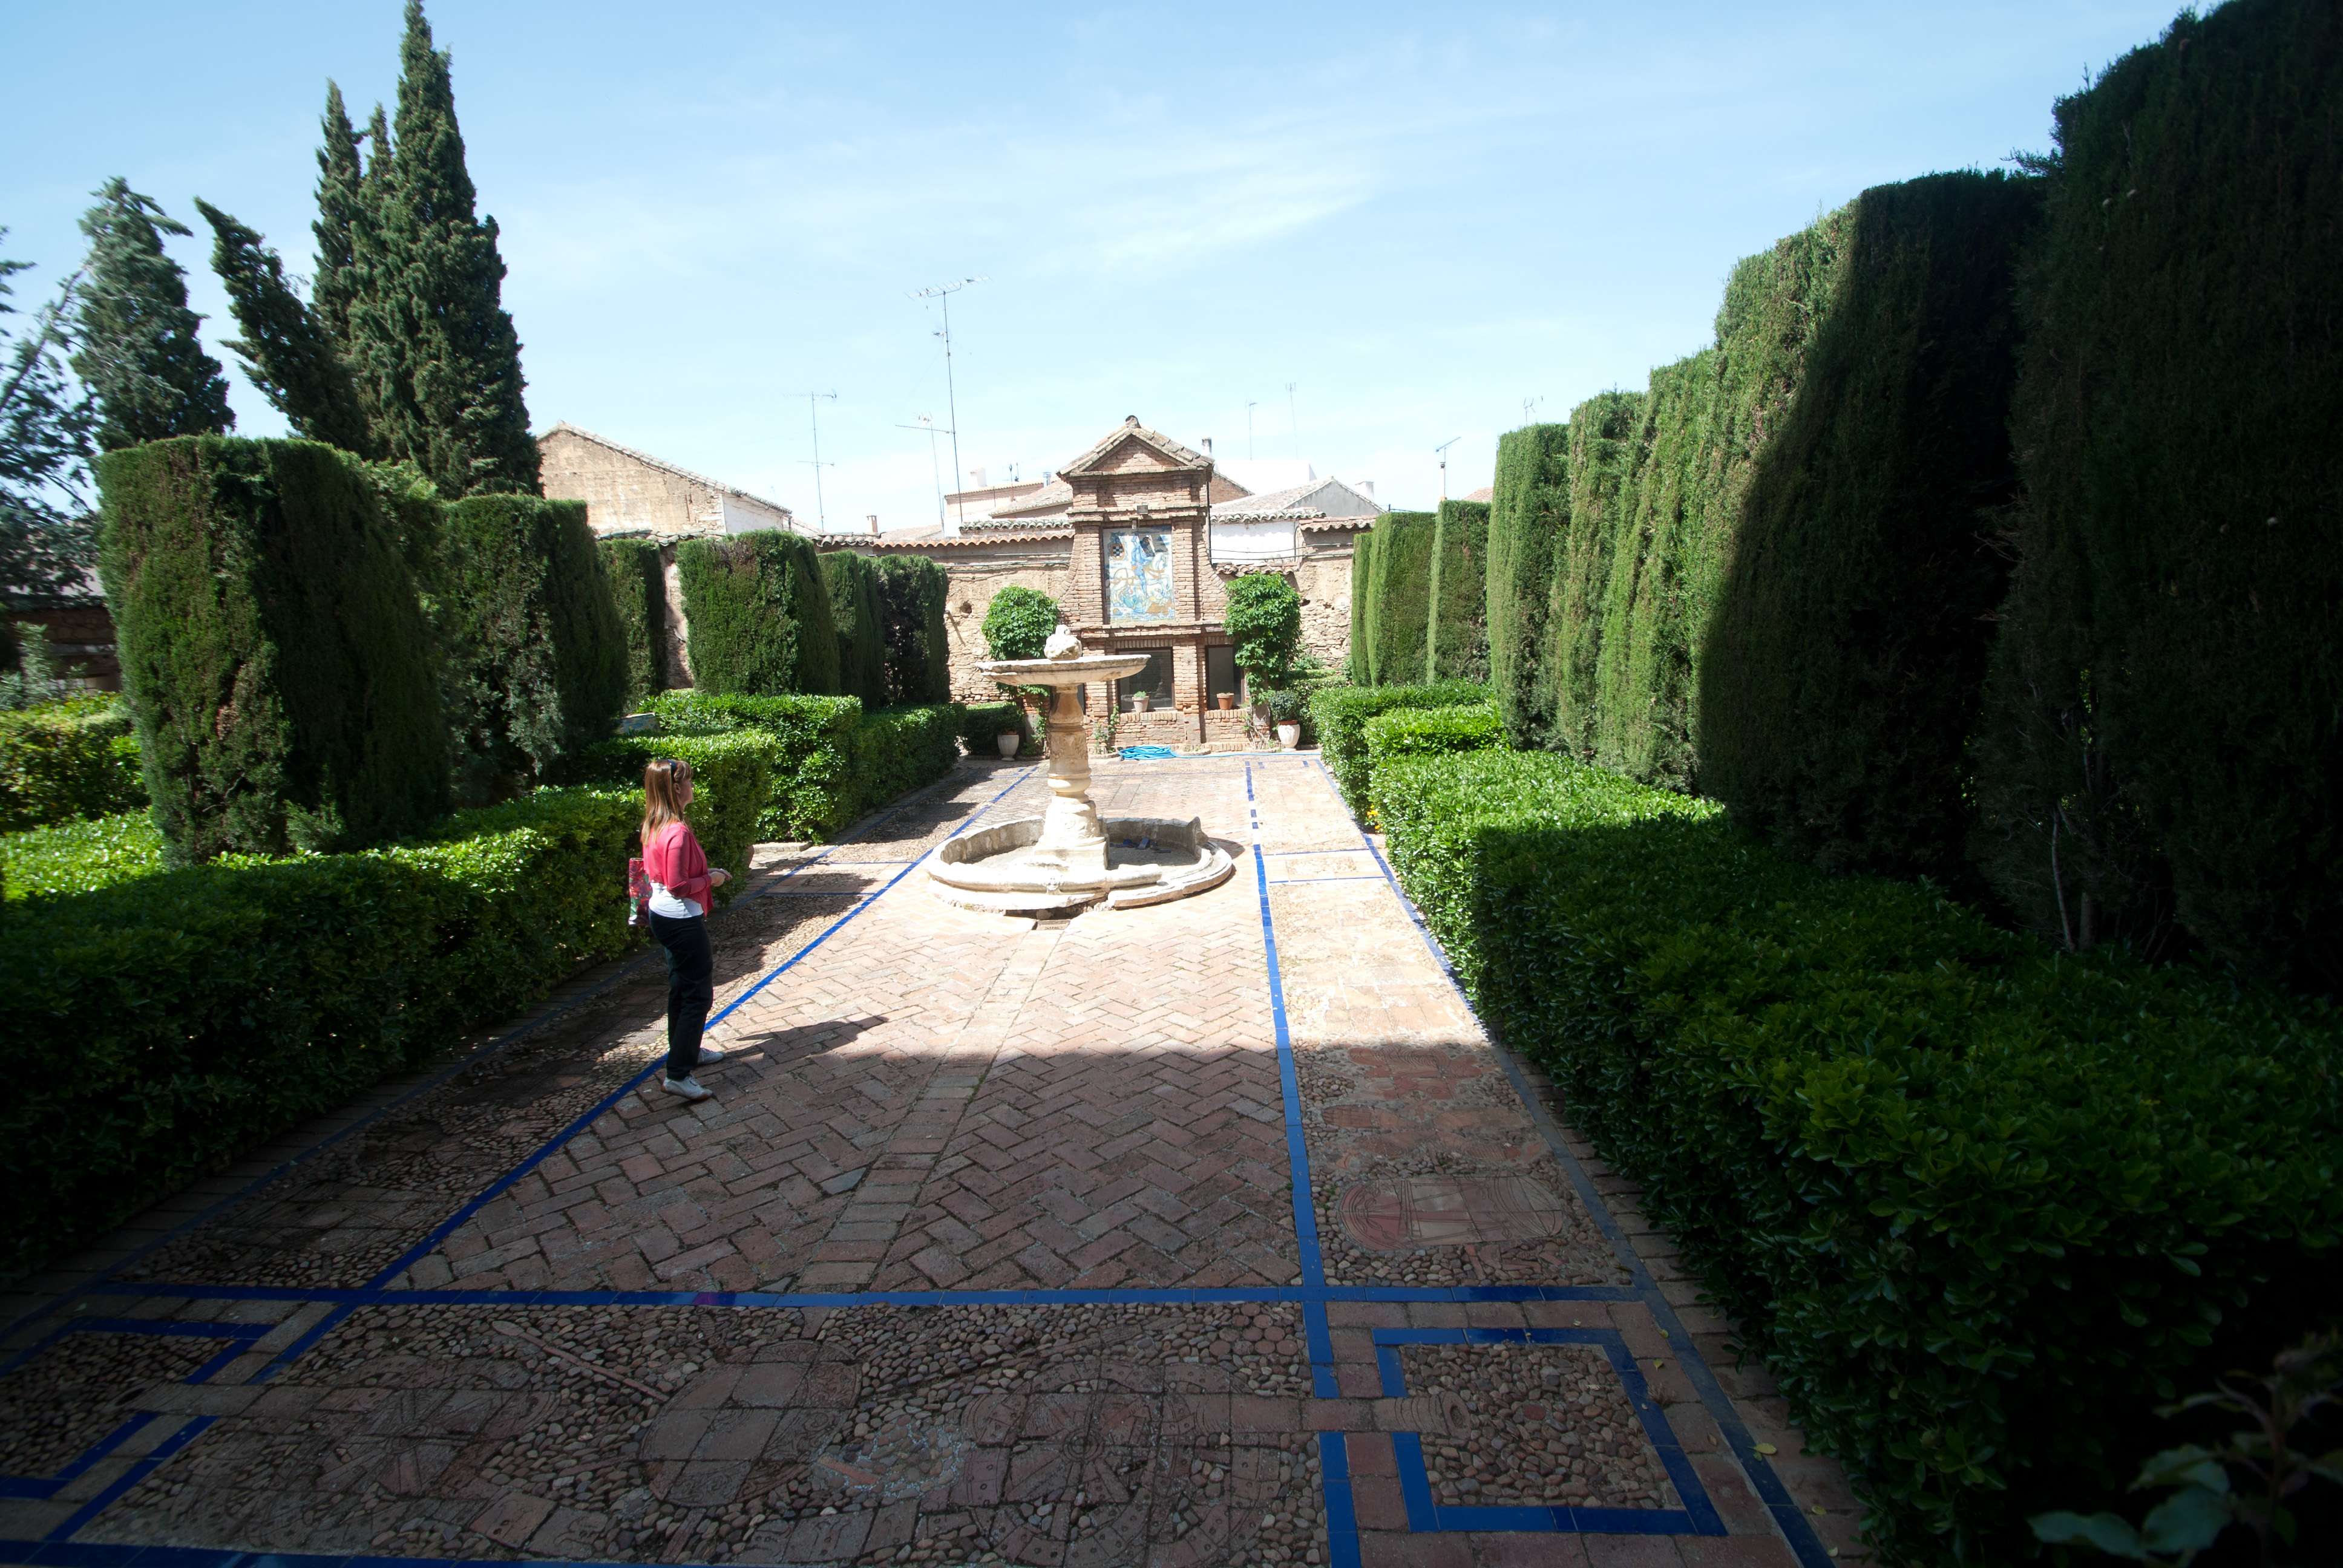 Entre encinas y carrizos - Blogs of Spain - El Palacio de El Viso del Marqués (6)